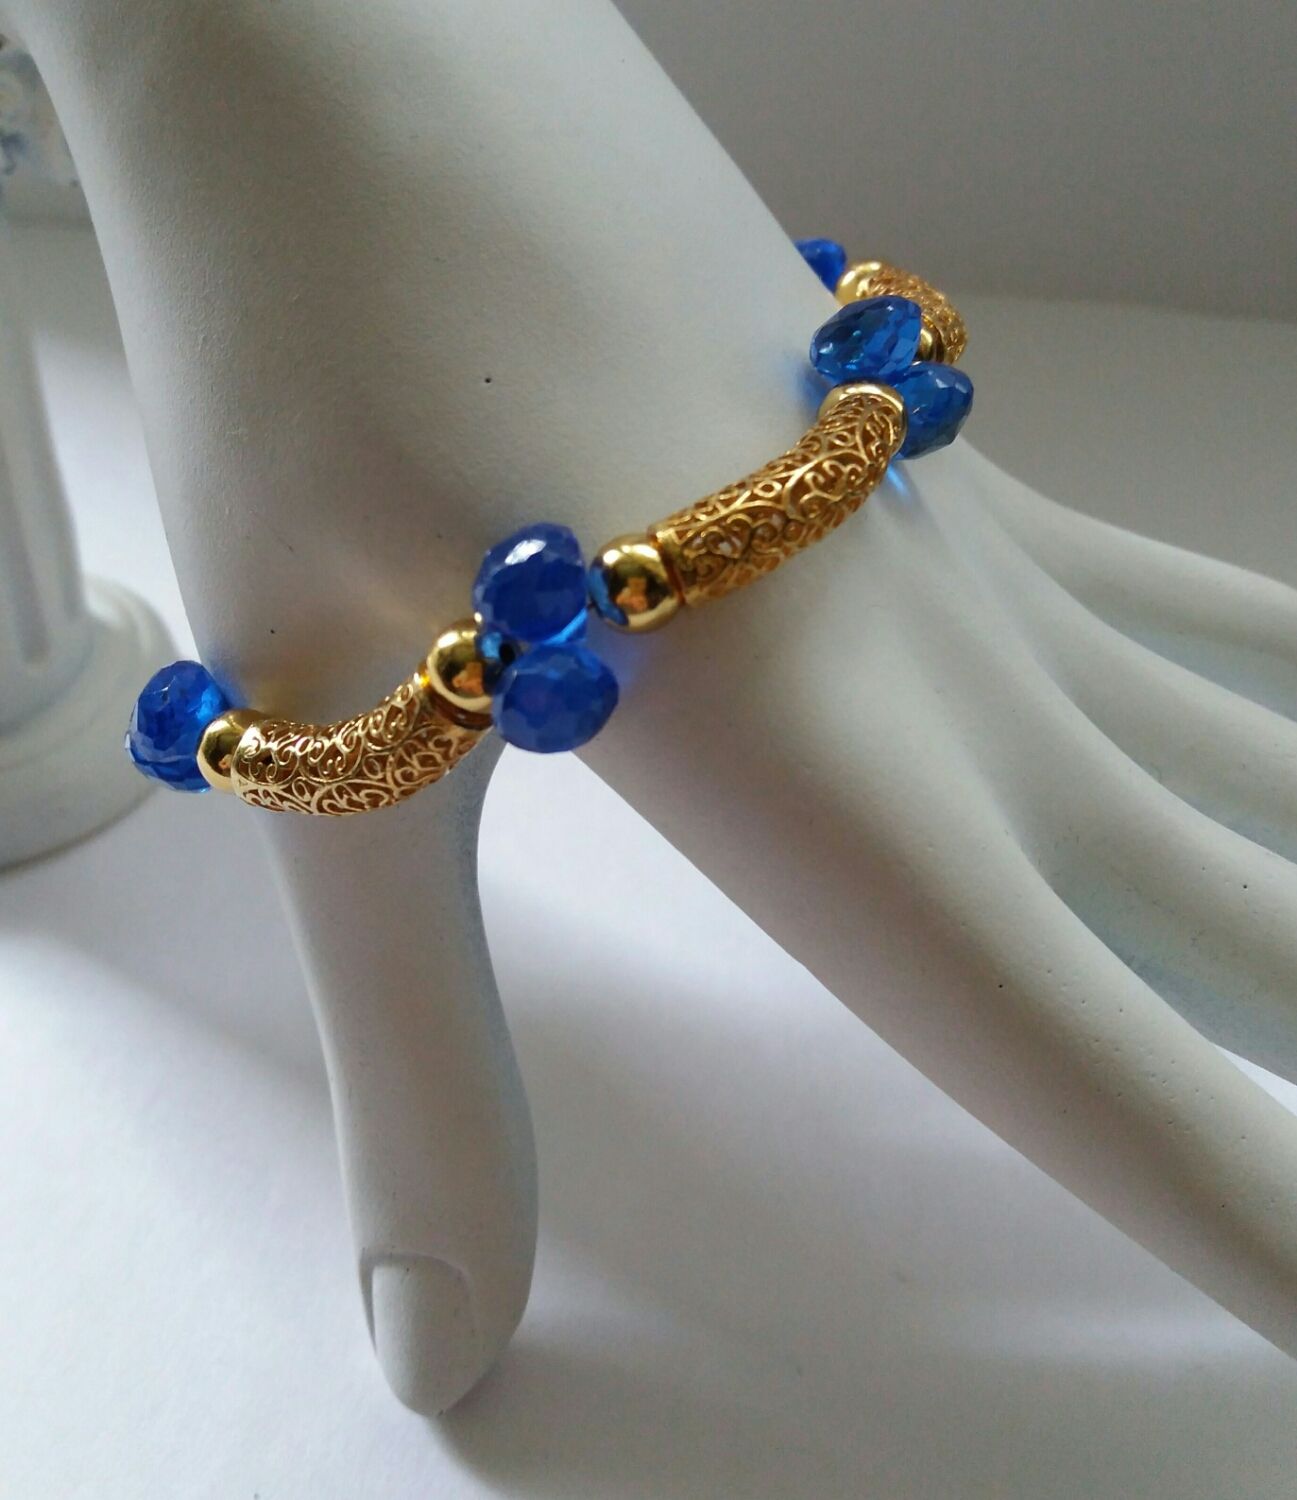 Браслет "Golden charm blue", из серебра и натуральных камней